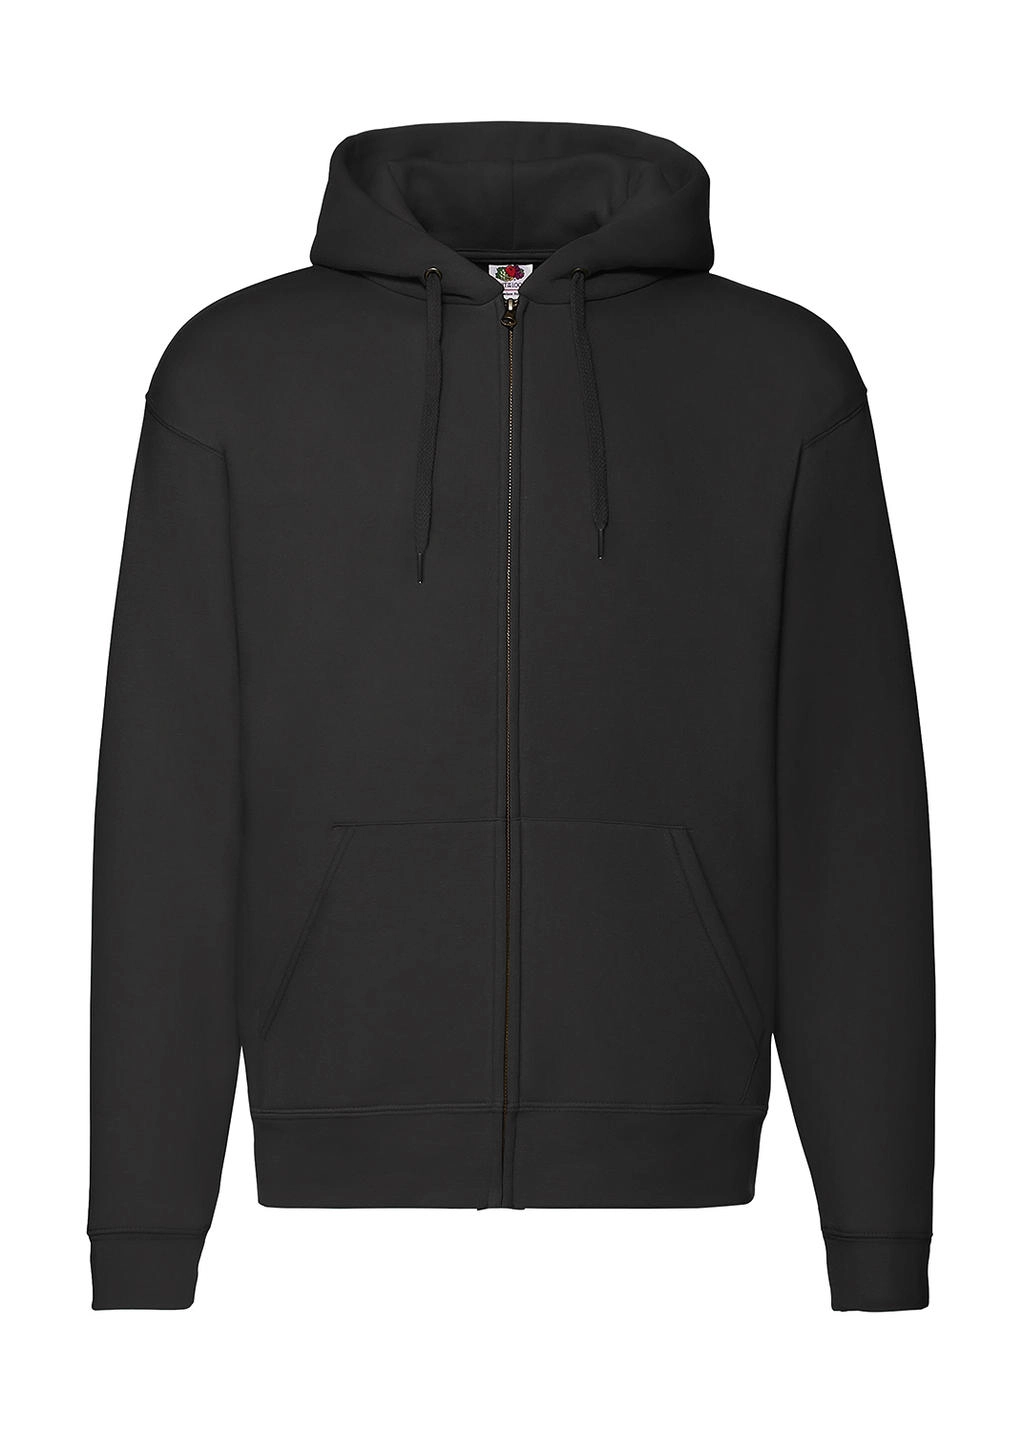 Premium Hooded Zip Sweat zum Besticken und Bedrucken in der Farbe Black mit Ihren Logo, Schriftzug oder Motiv.